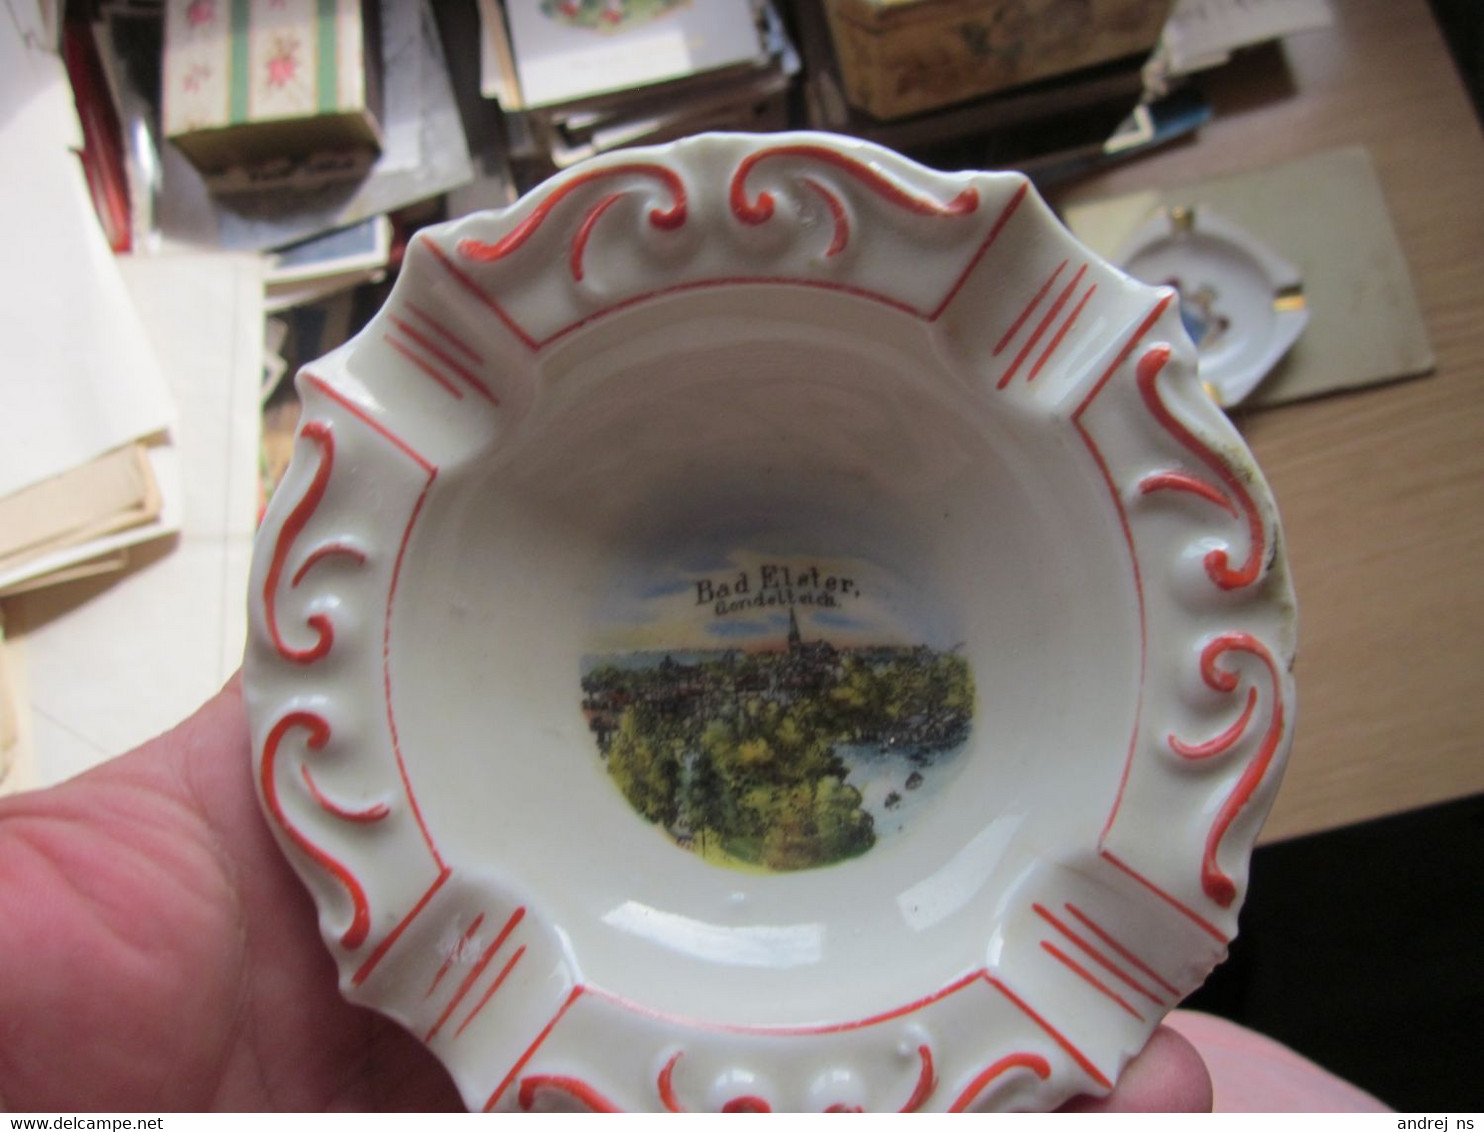 Old Porcelain Ashtray Bad Elster - Porcelain